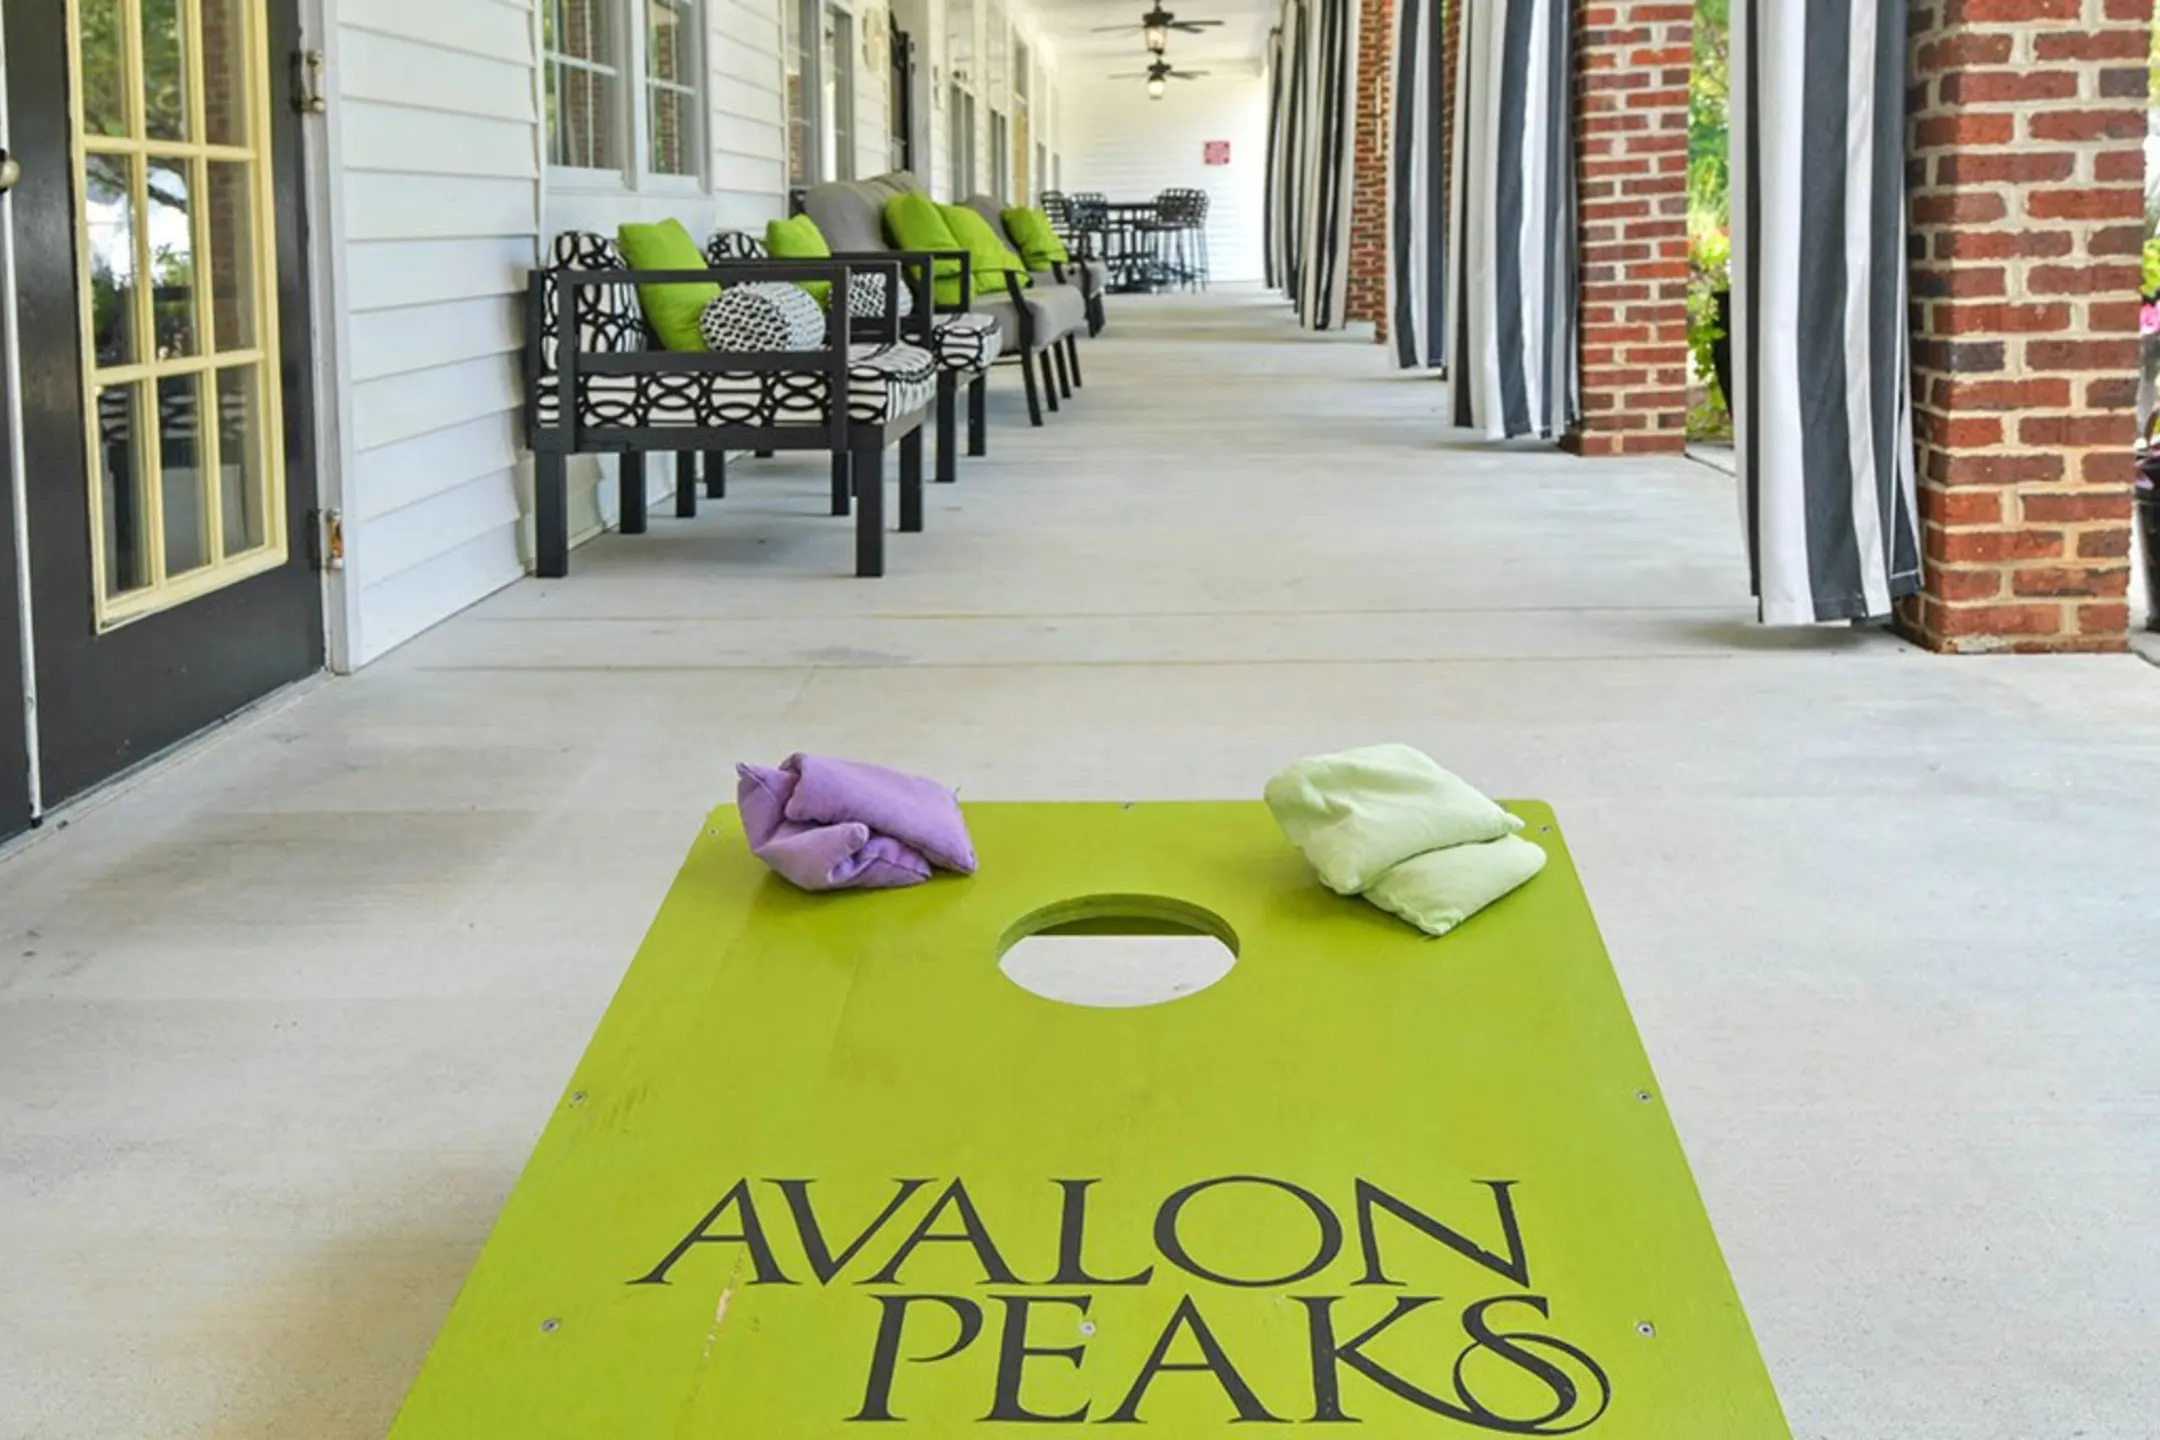 Avalon Peaks - Apex, NC